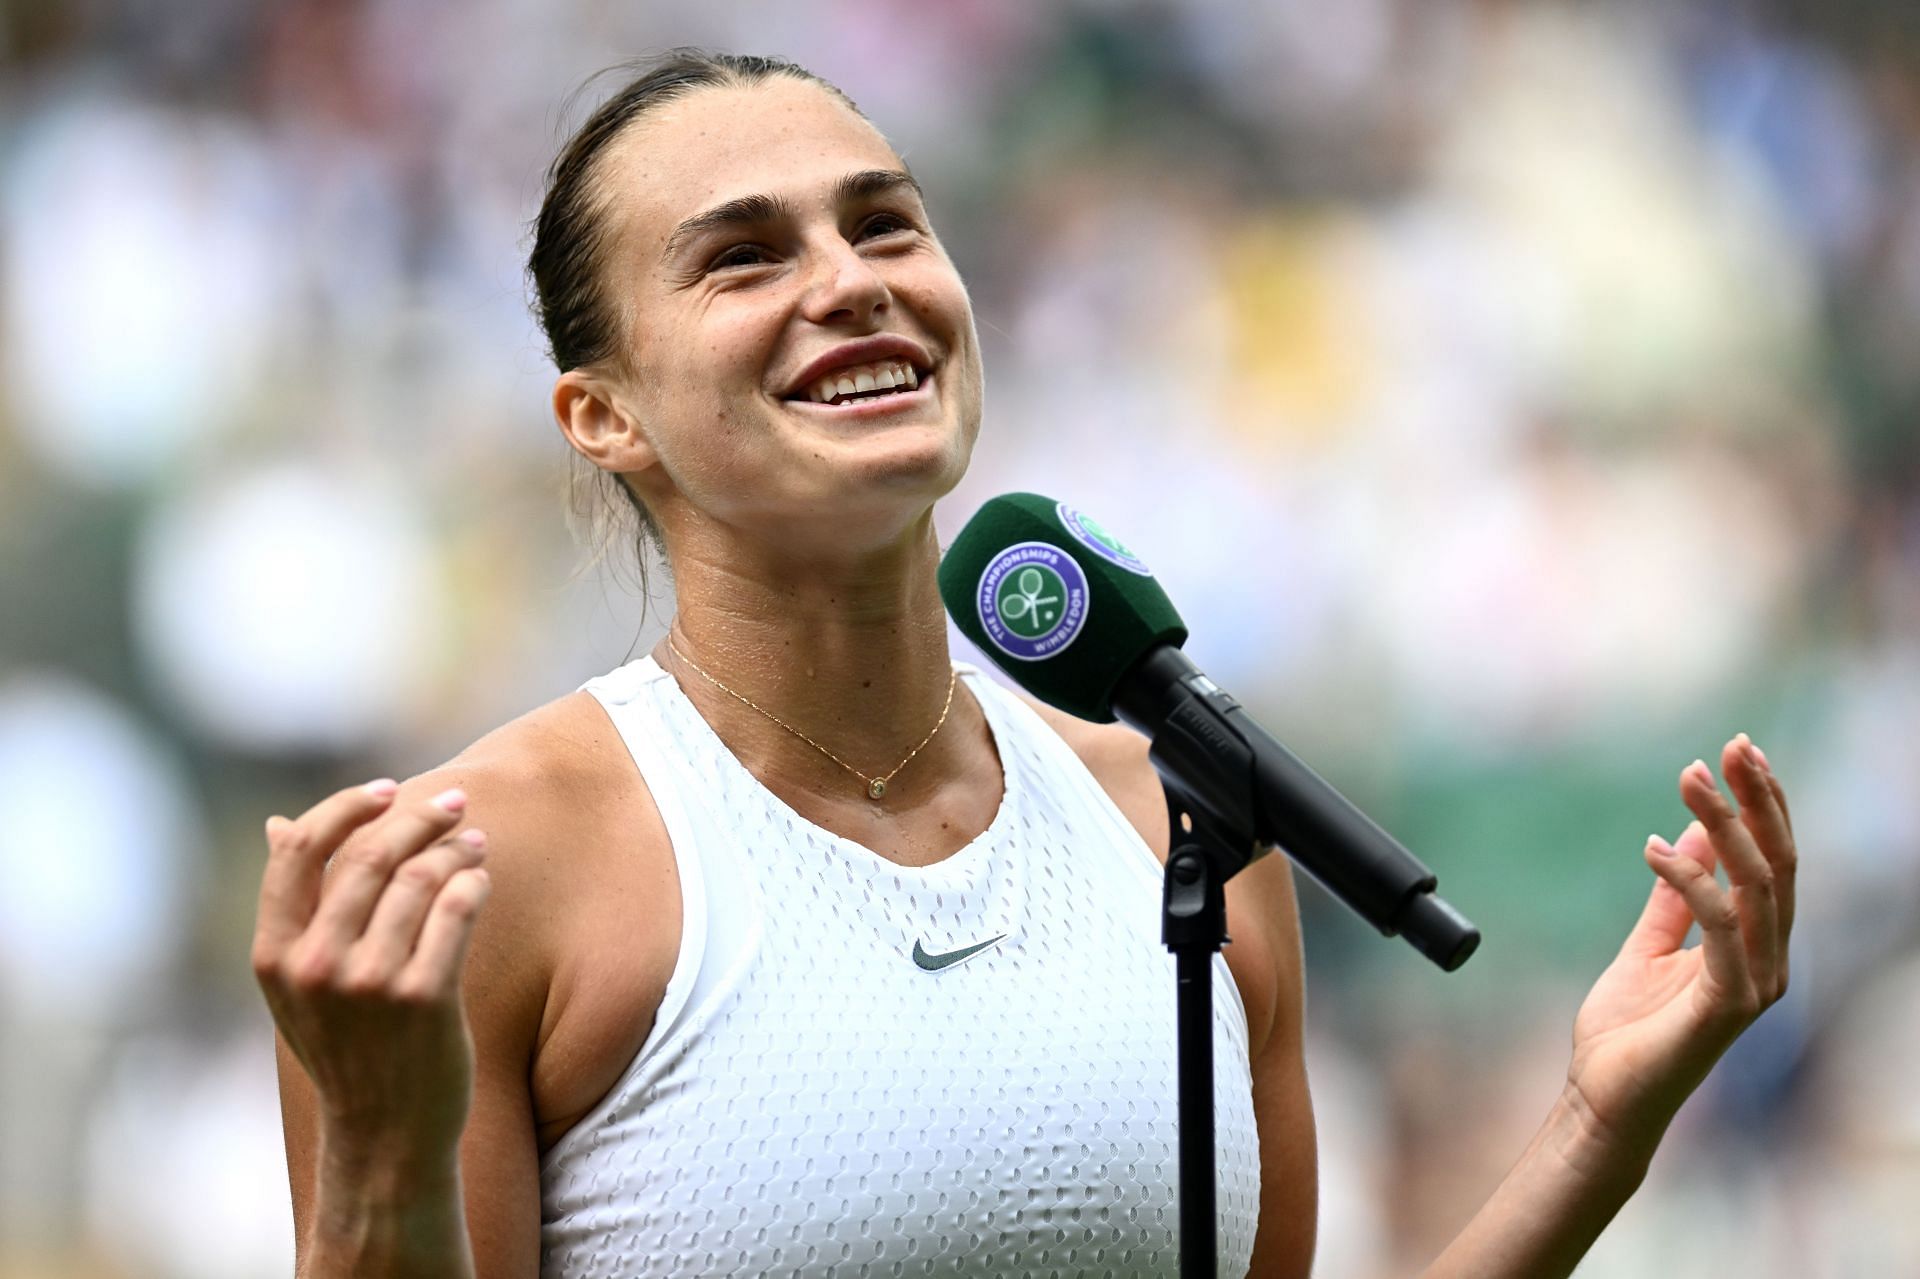 Aryna Sabalenka at the 2023 Wimbledon.